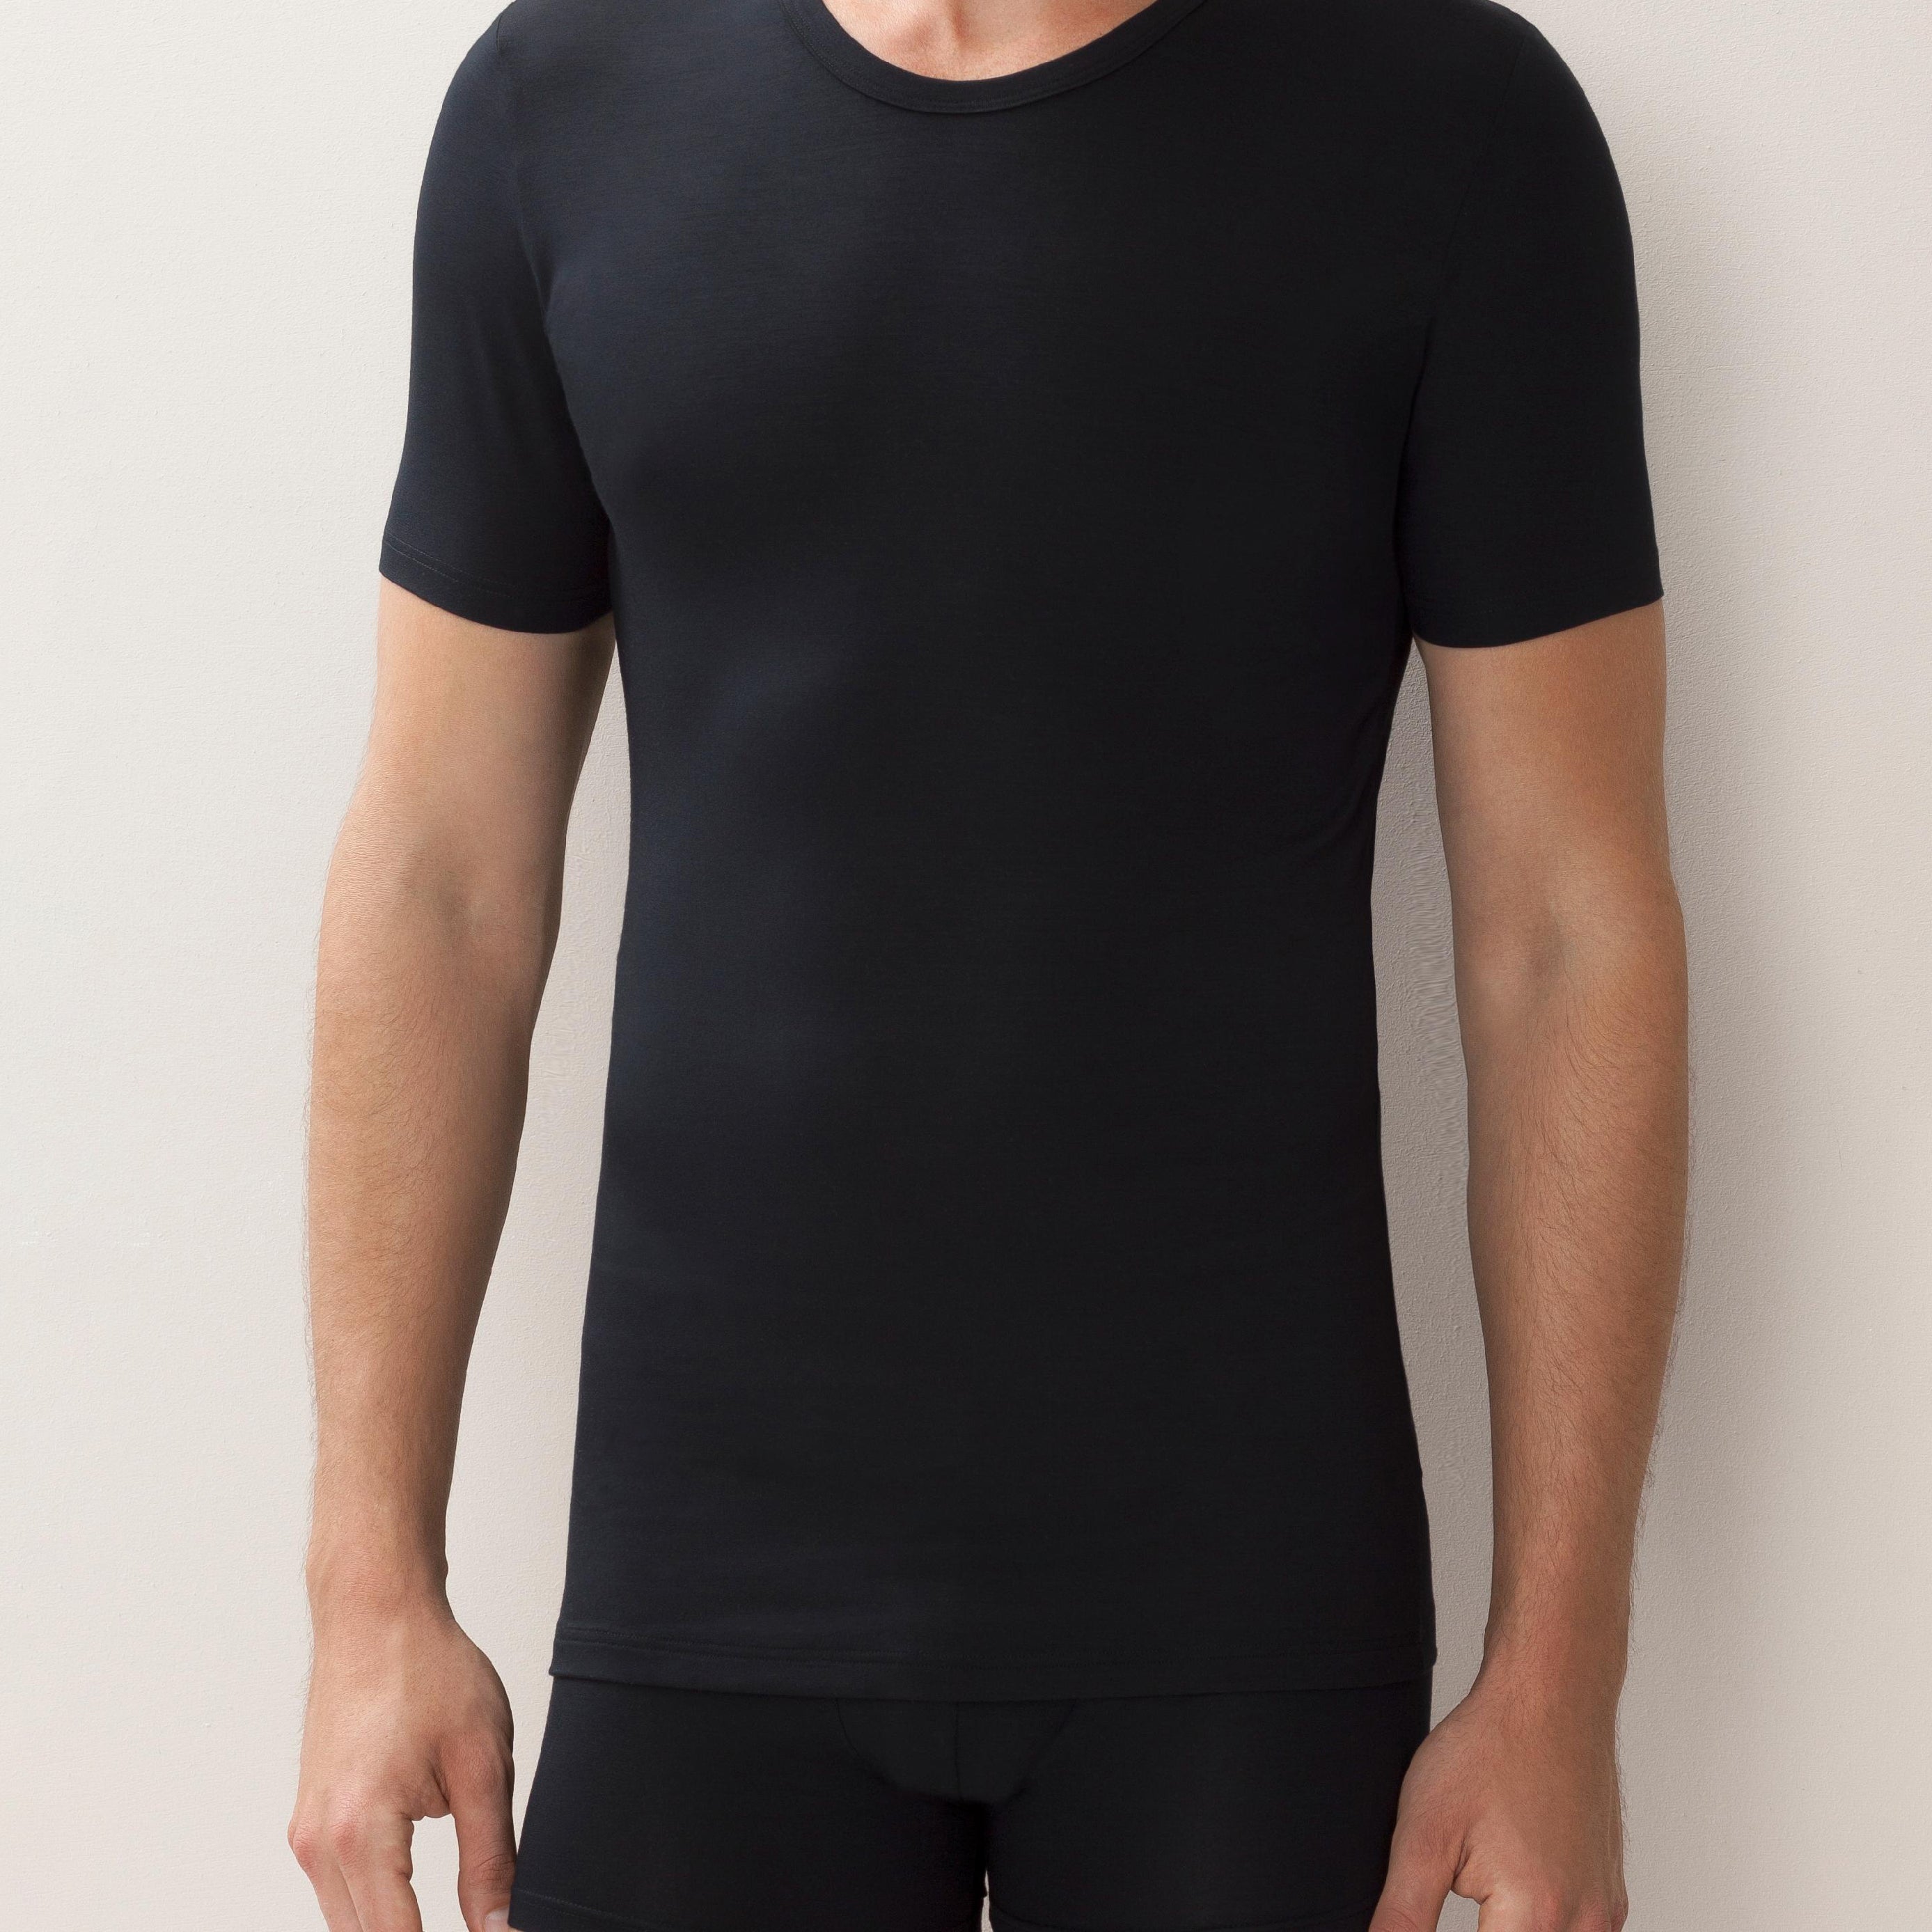 Shirt kurzarm,hoher Rundhals-Ausschnitt 700 PURENESS